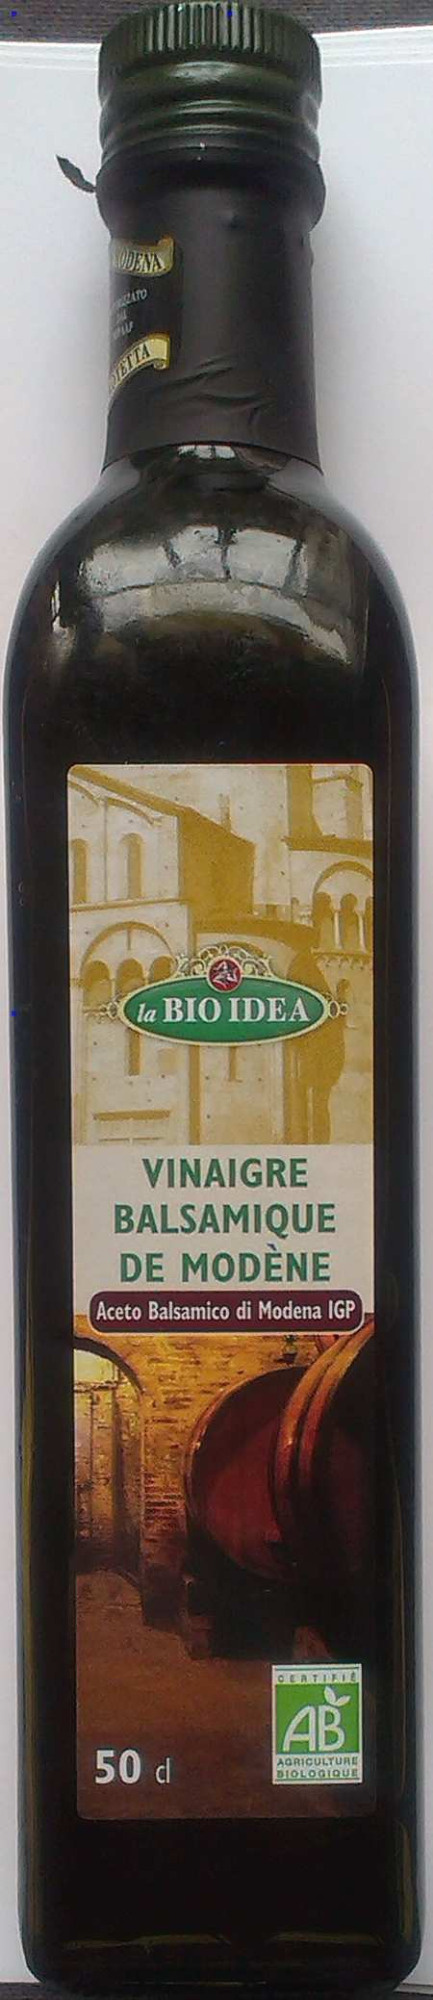 Vinaigre balsamique de Modène - Product - fr